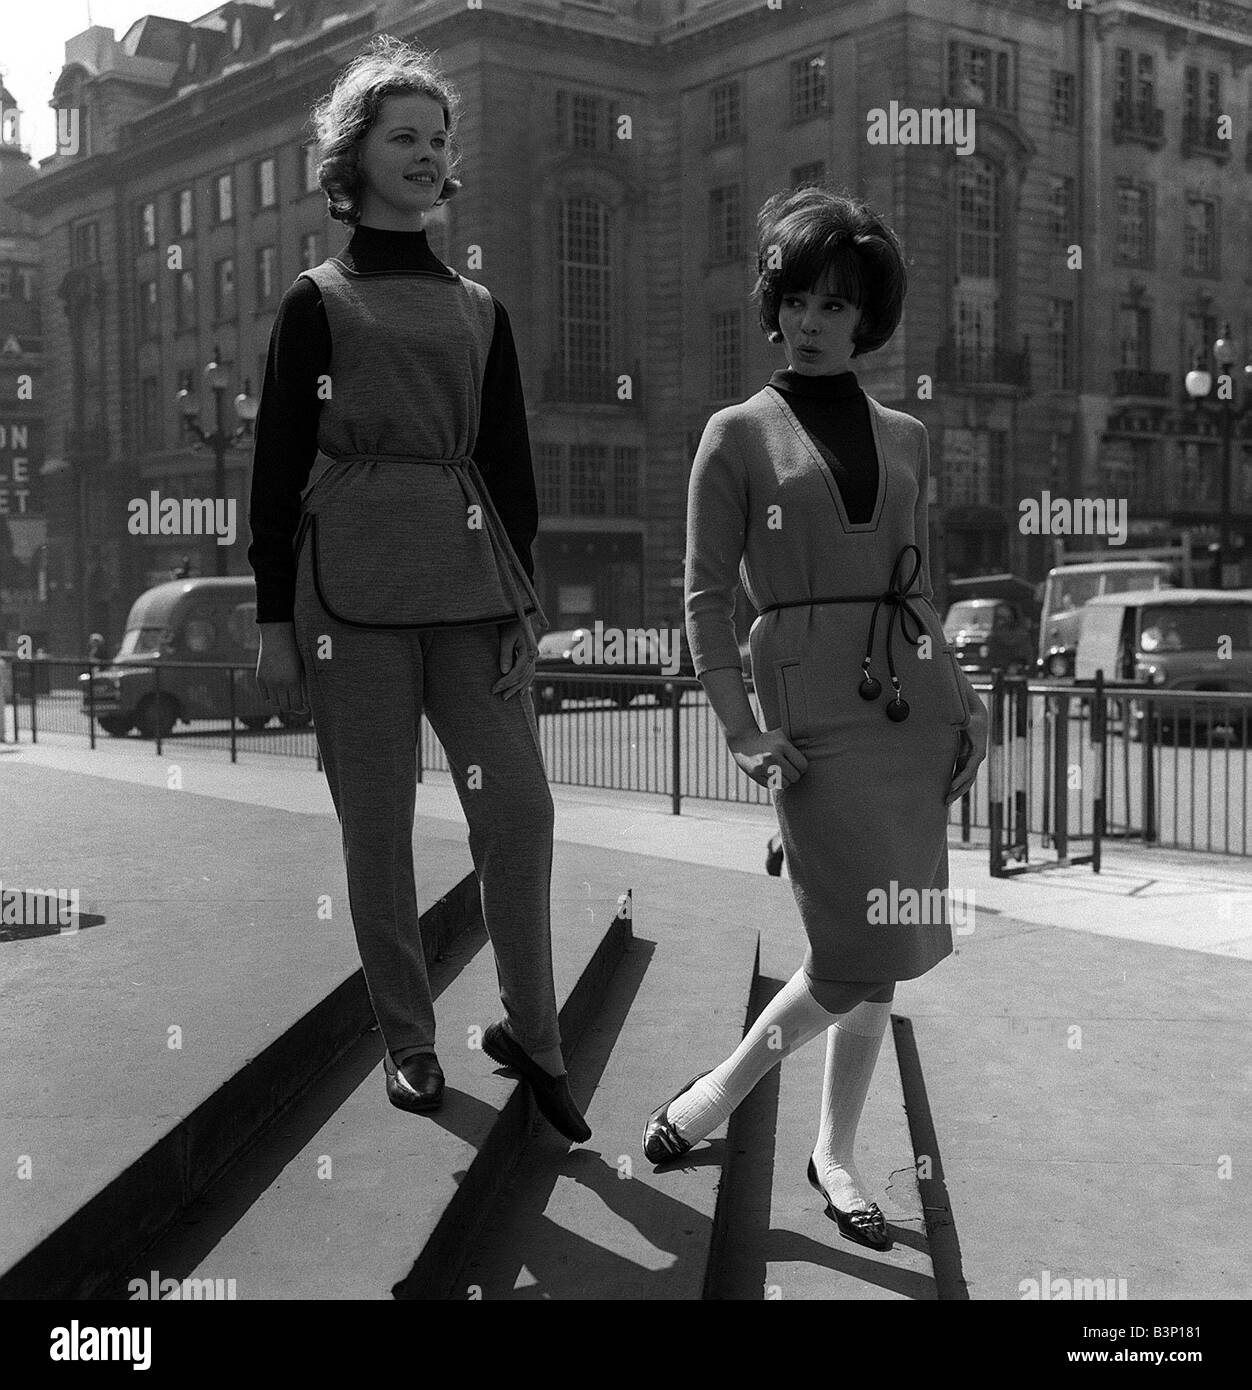 La mode chez les adolescentes dans les années 60, deux jeunes filles debout  sur mesures dans la rue l'un porte une tunique et un pantalon et l'autre  est en jupe et veste